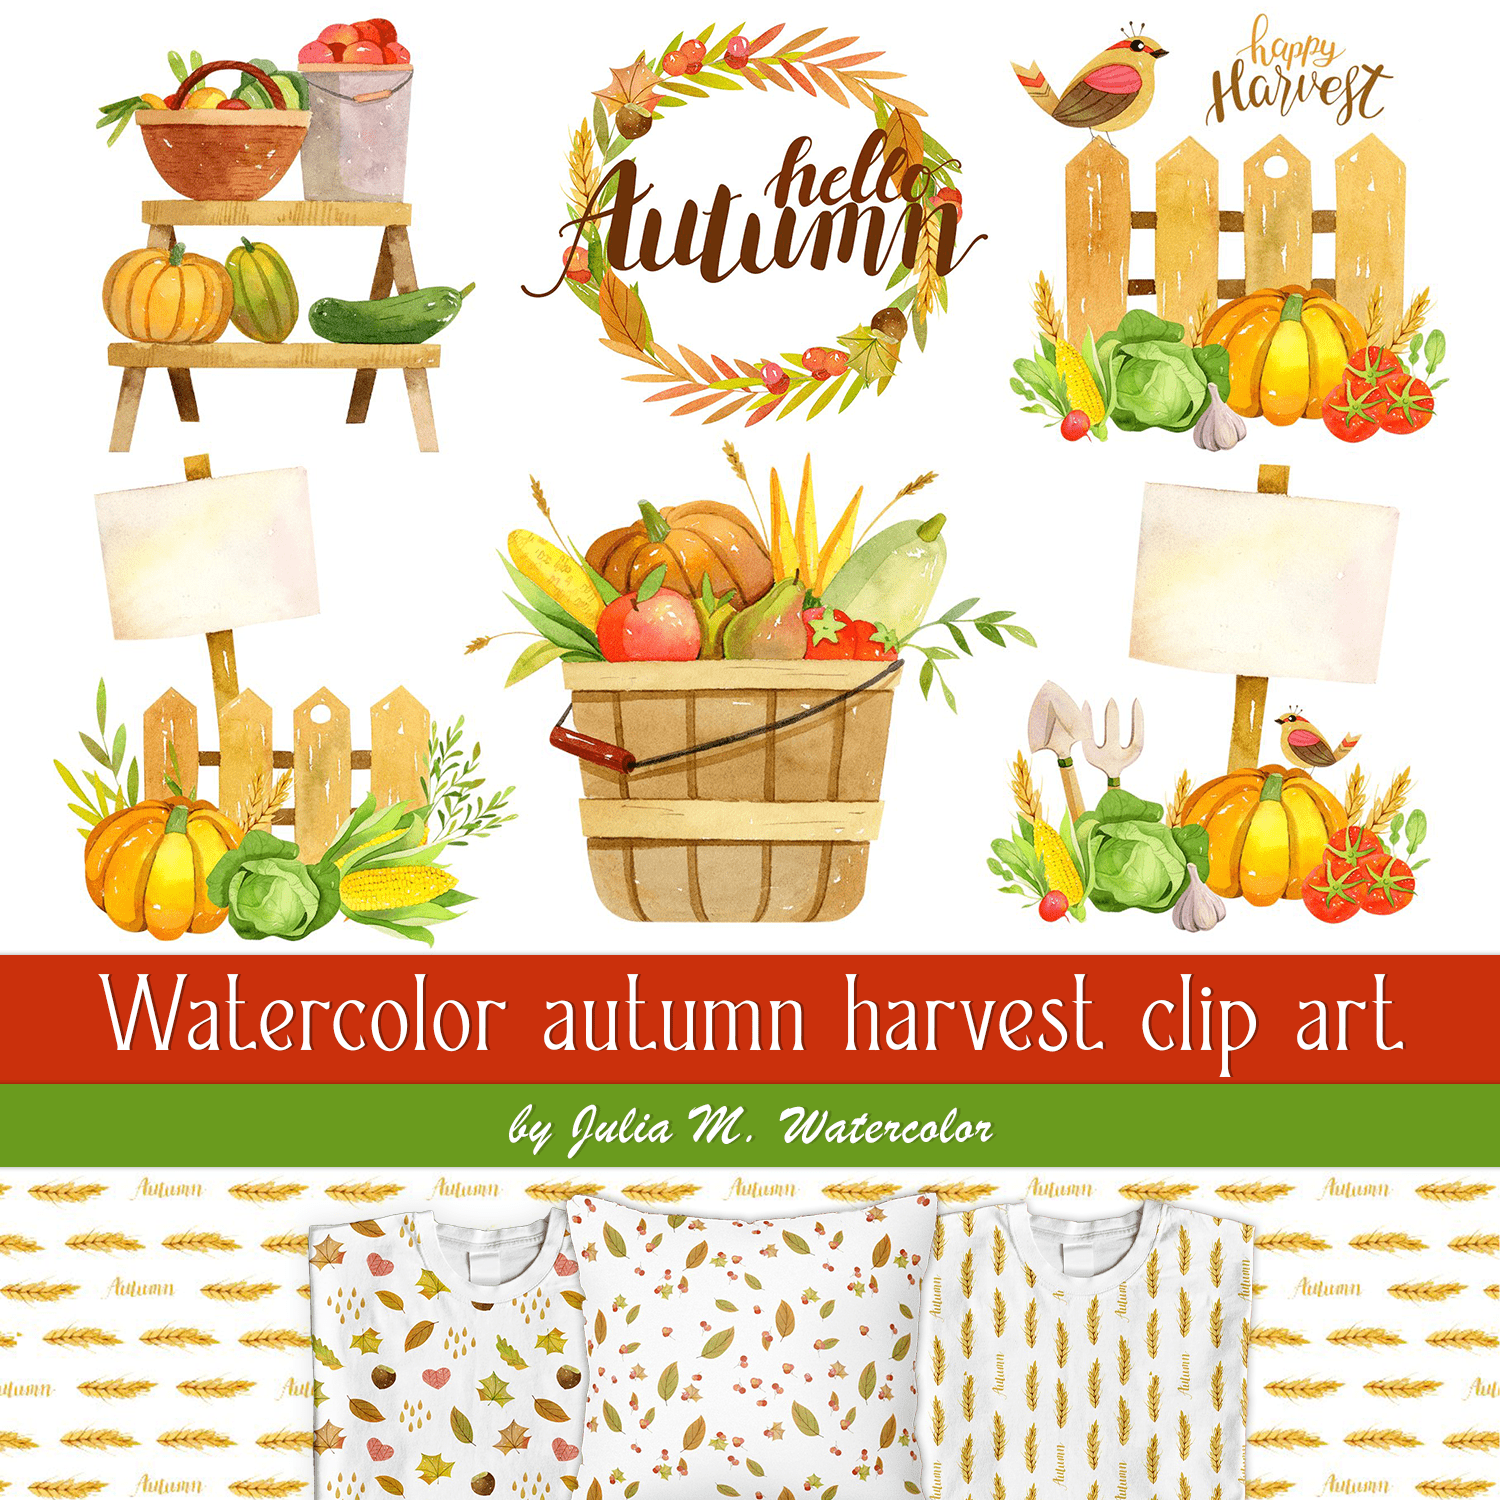 Watercolor autumn harvest clip art cover.